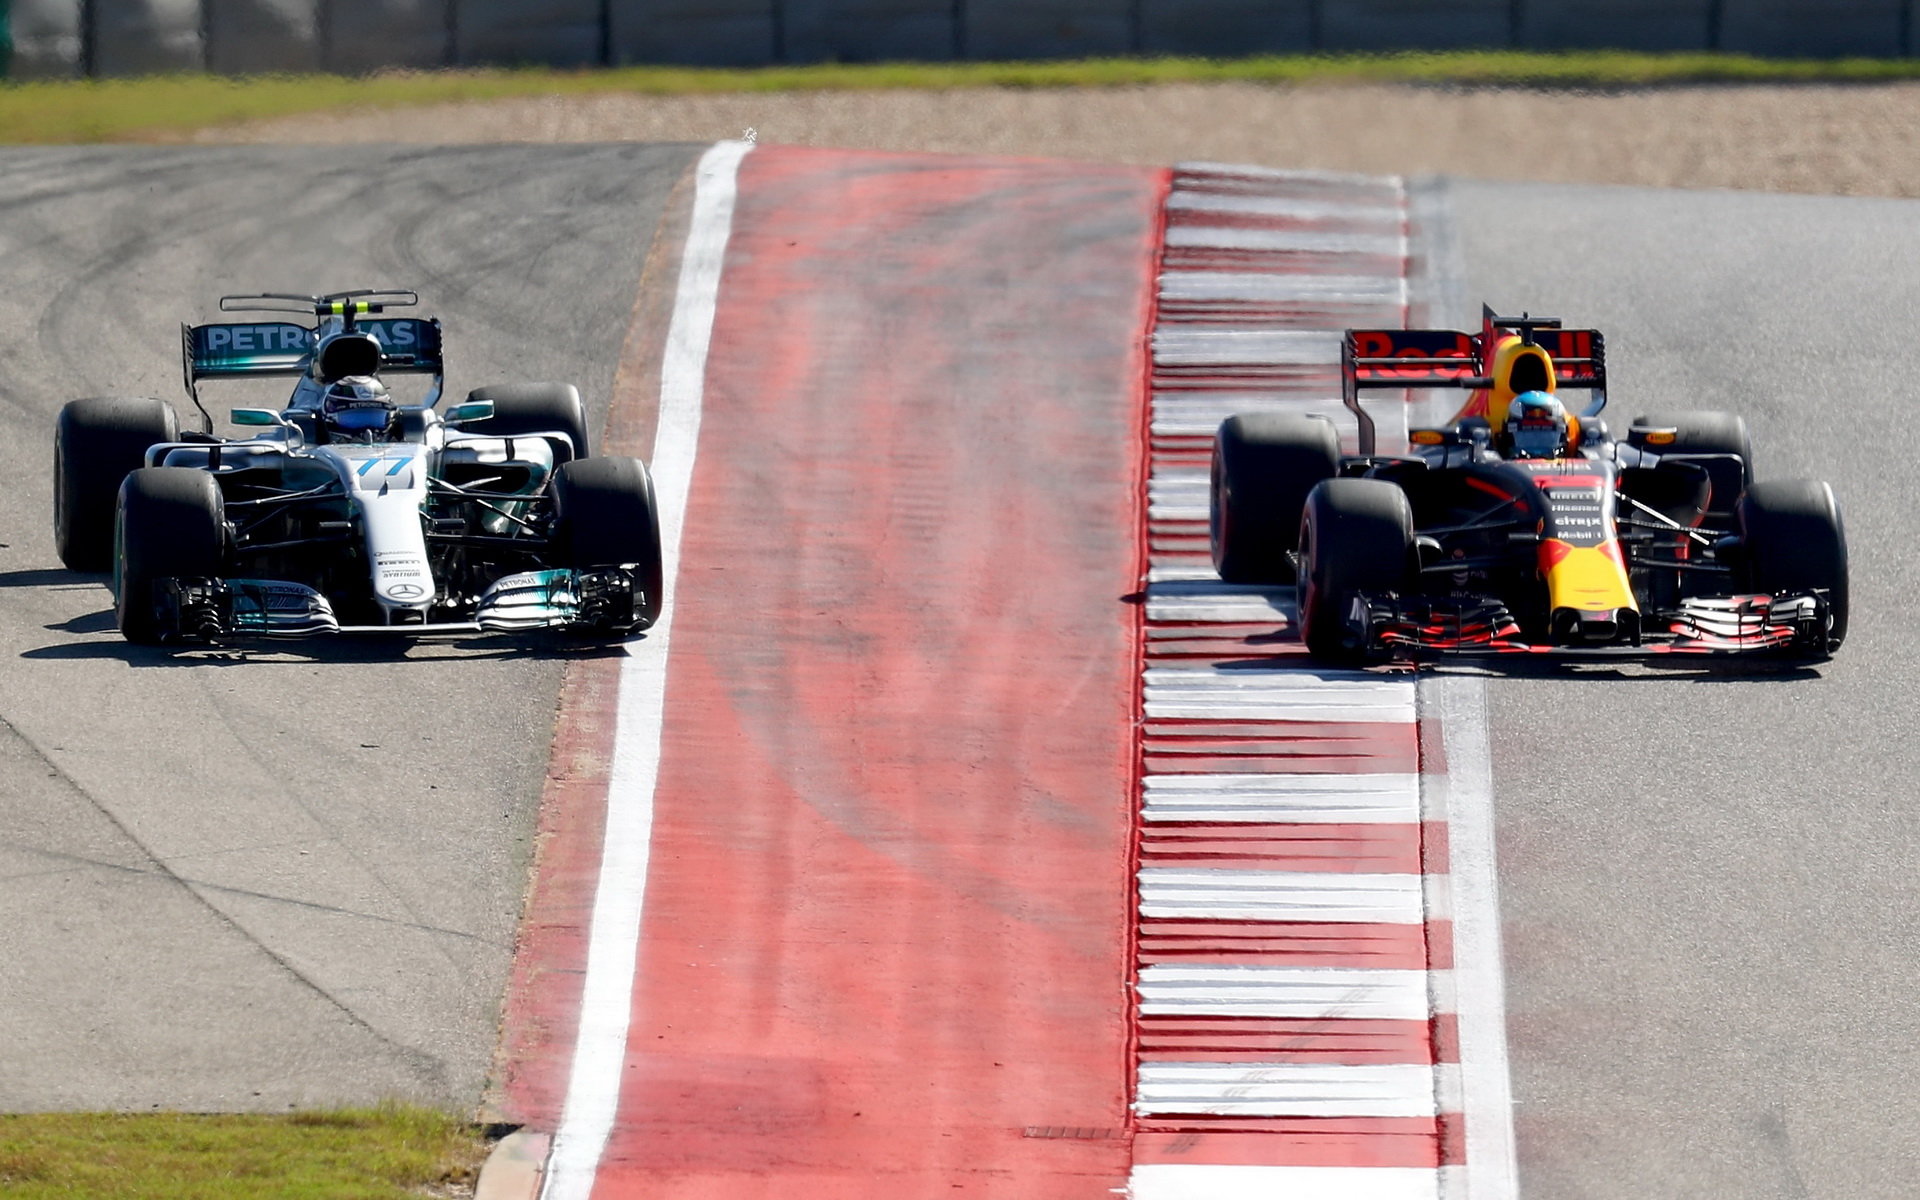 Valtteri Bottas a Daniel Ricciardo při předjíždění v závodě v Austinu